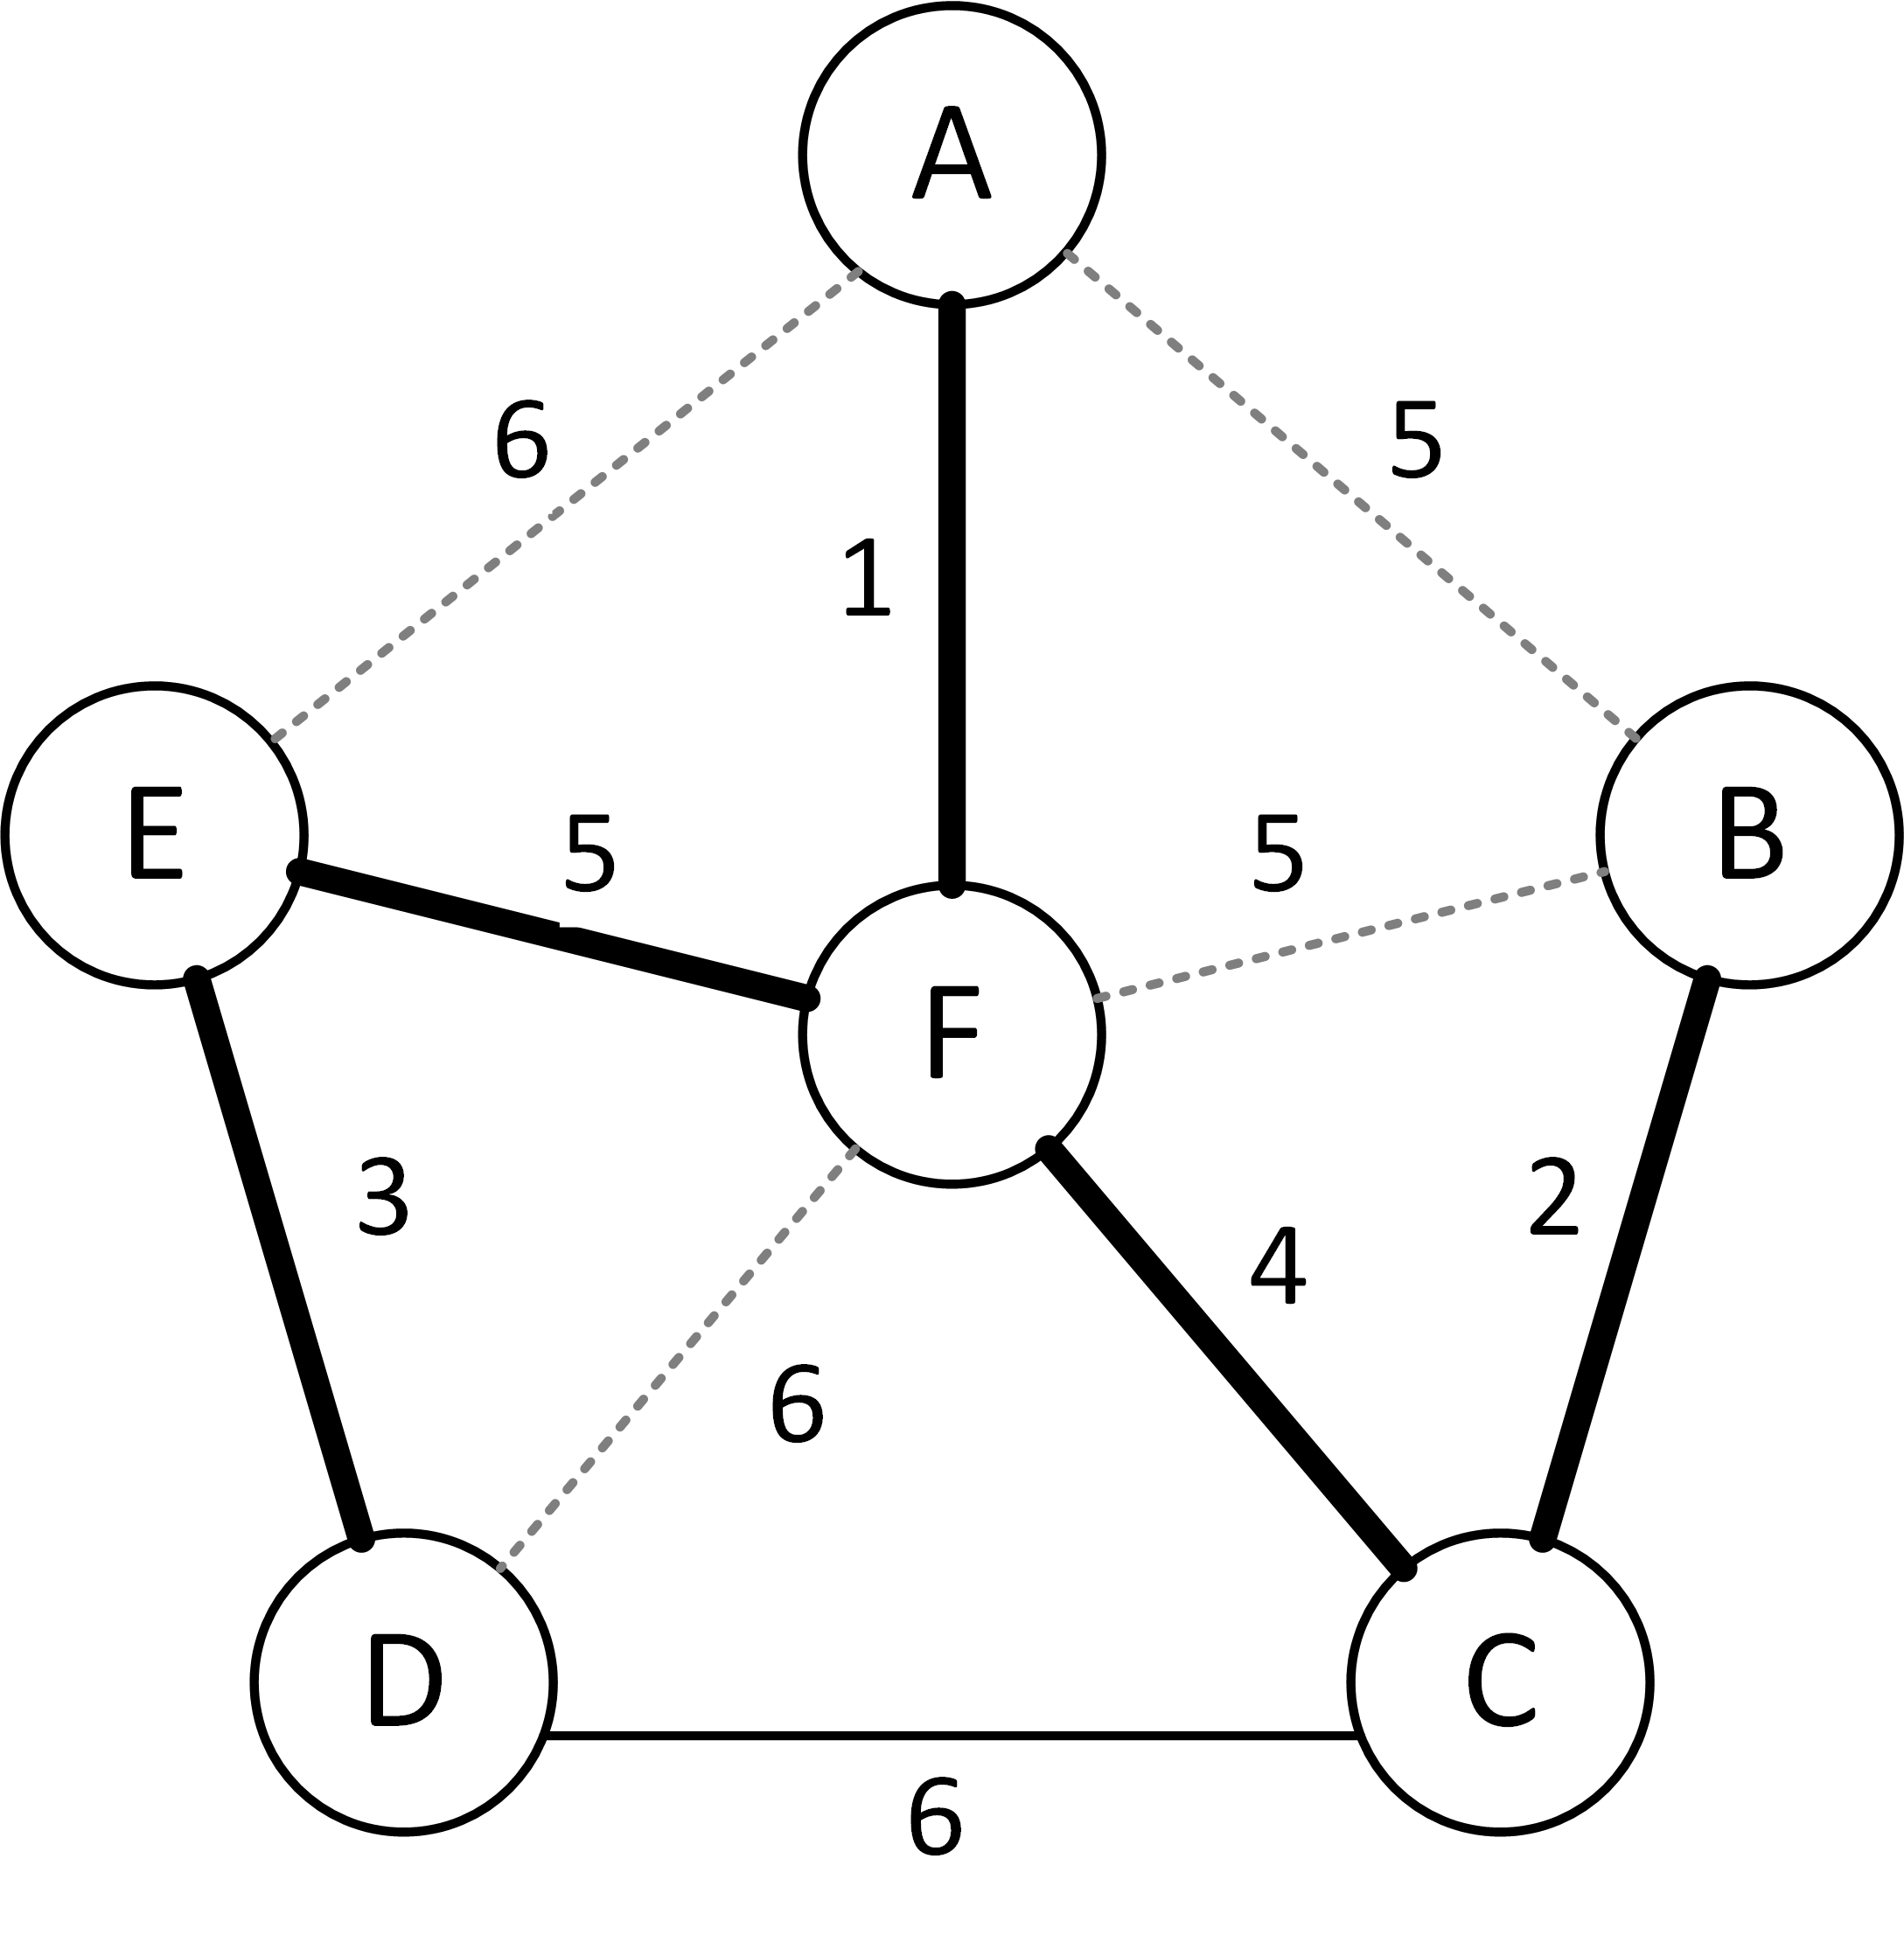 Элементы дерева графа. Остовное дерево Связного графа. Дискретная математика остовное дерево. Нахождение минимального остовного дерева. Минимальные остовные деревья нагруженных графов..